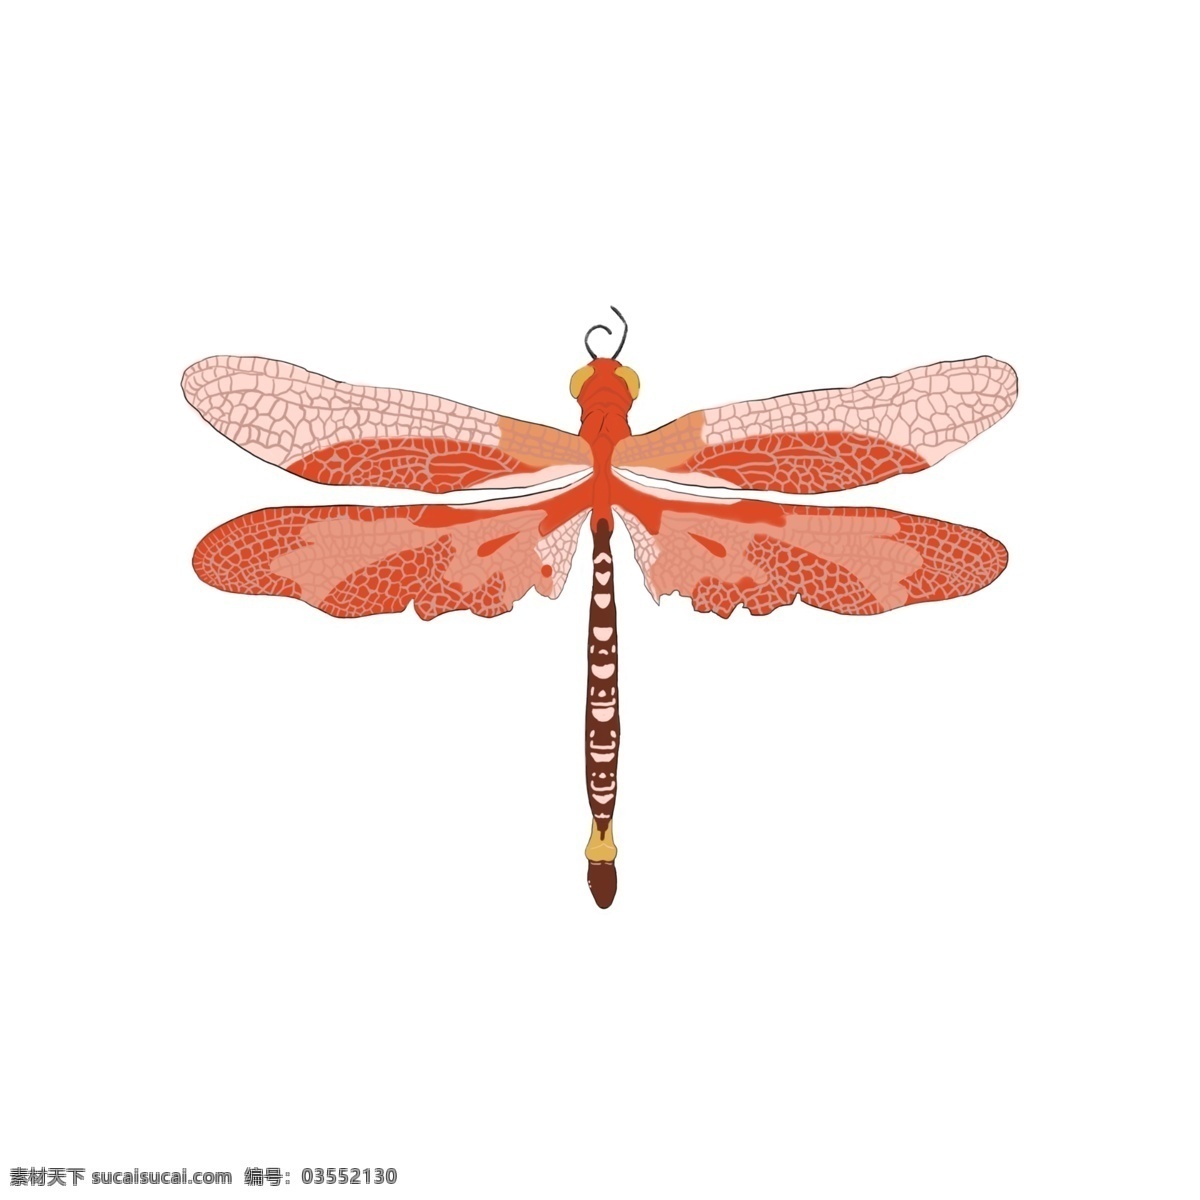 手绘蜻蜓 手绘 插画 蜻蜓 昆虫 翅膀 卡通设计